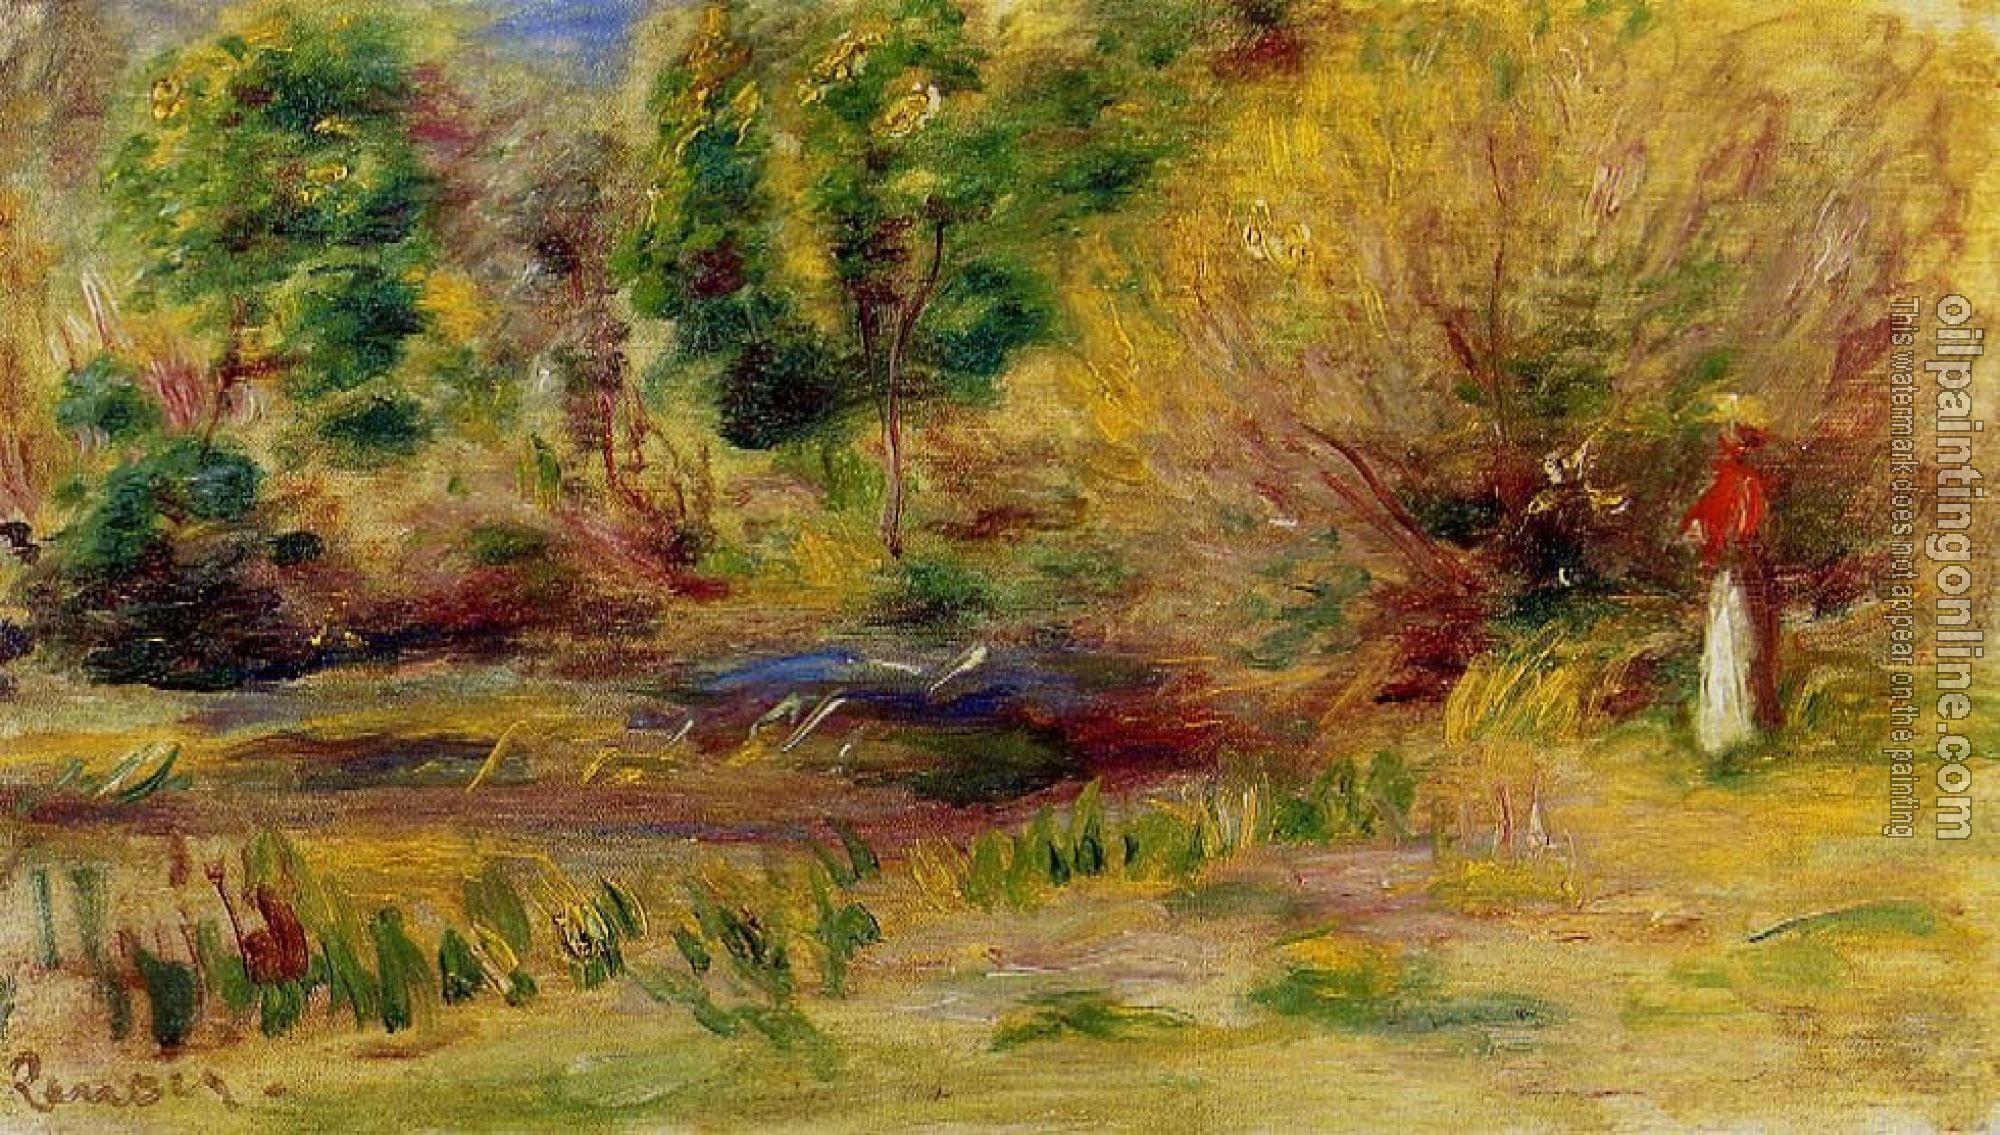 Renoir, Pierre Auguste - Woman Wearing a Hat in a Landscape